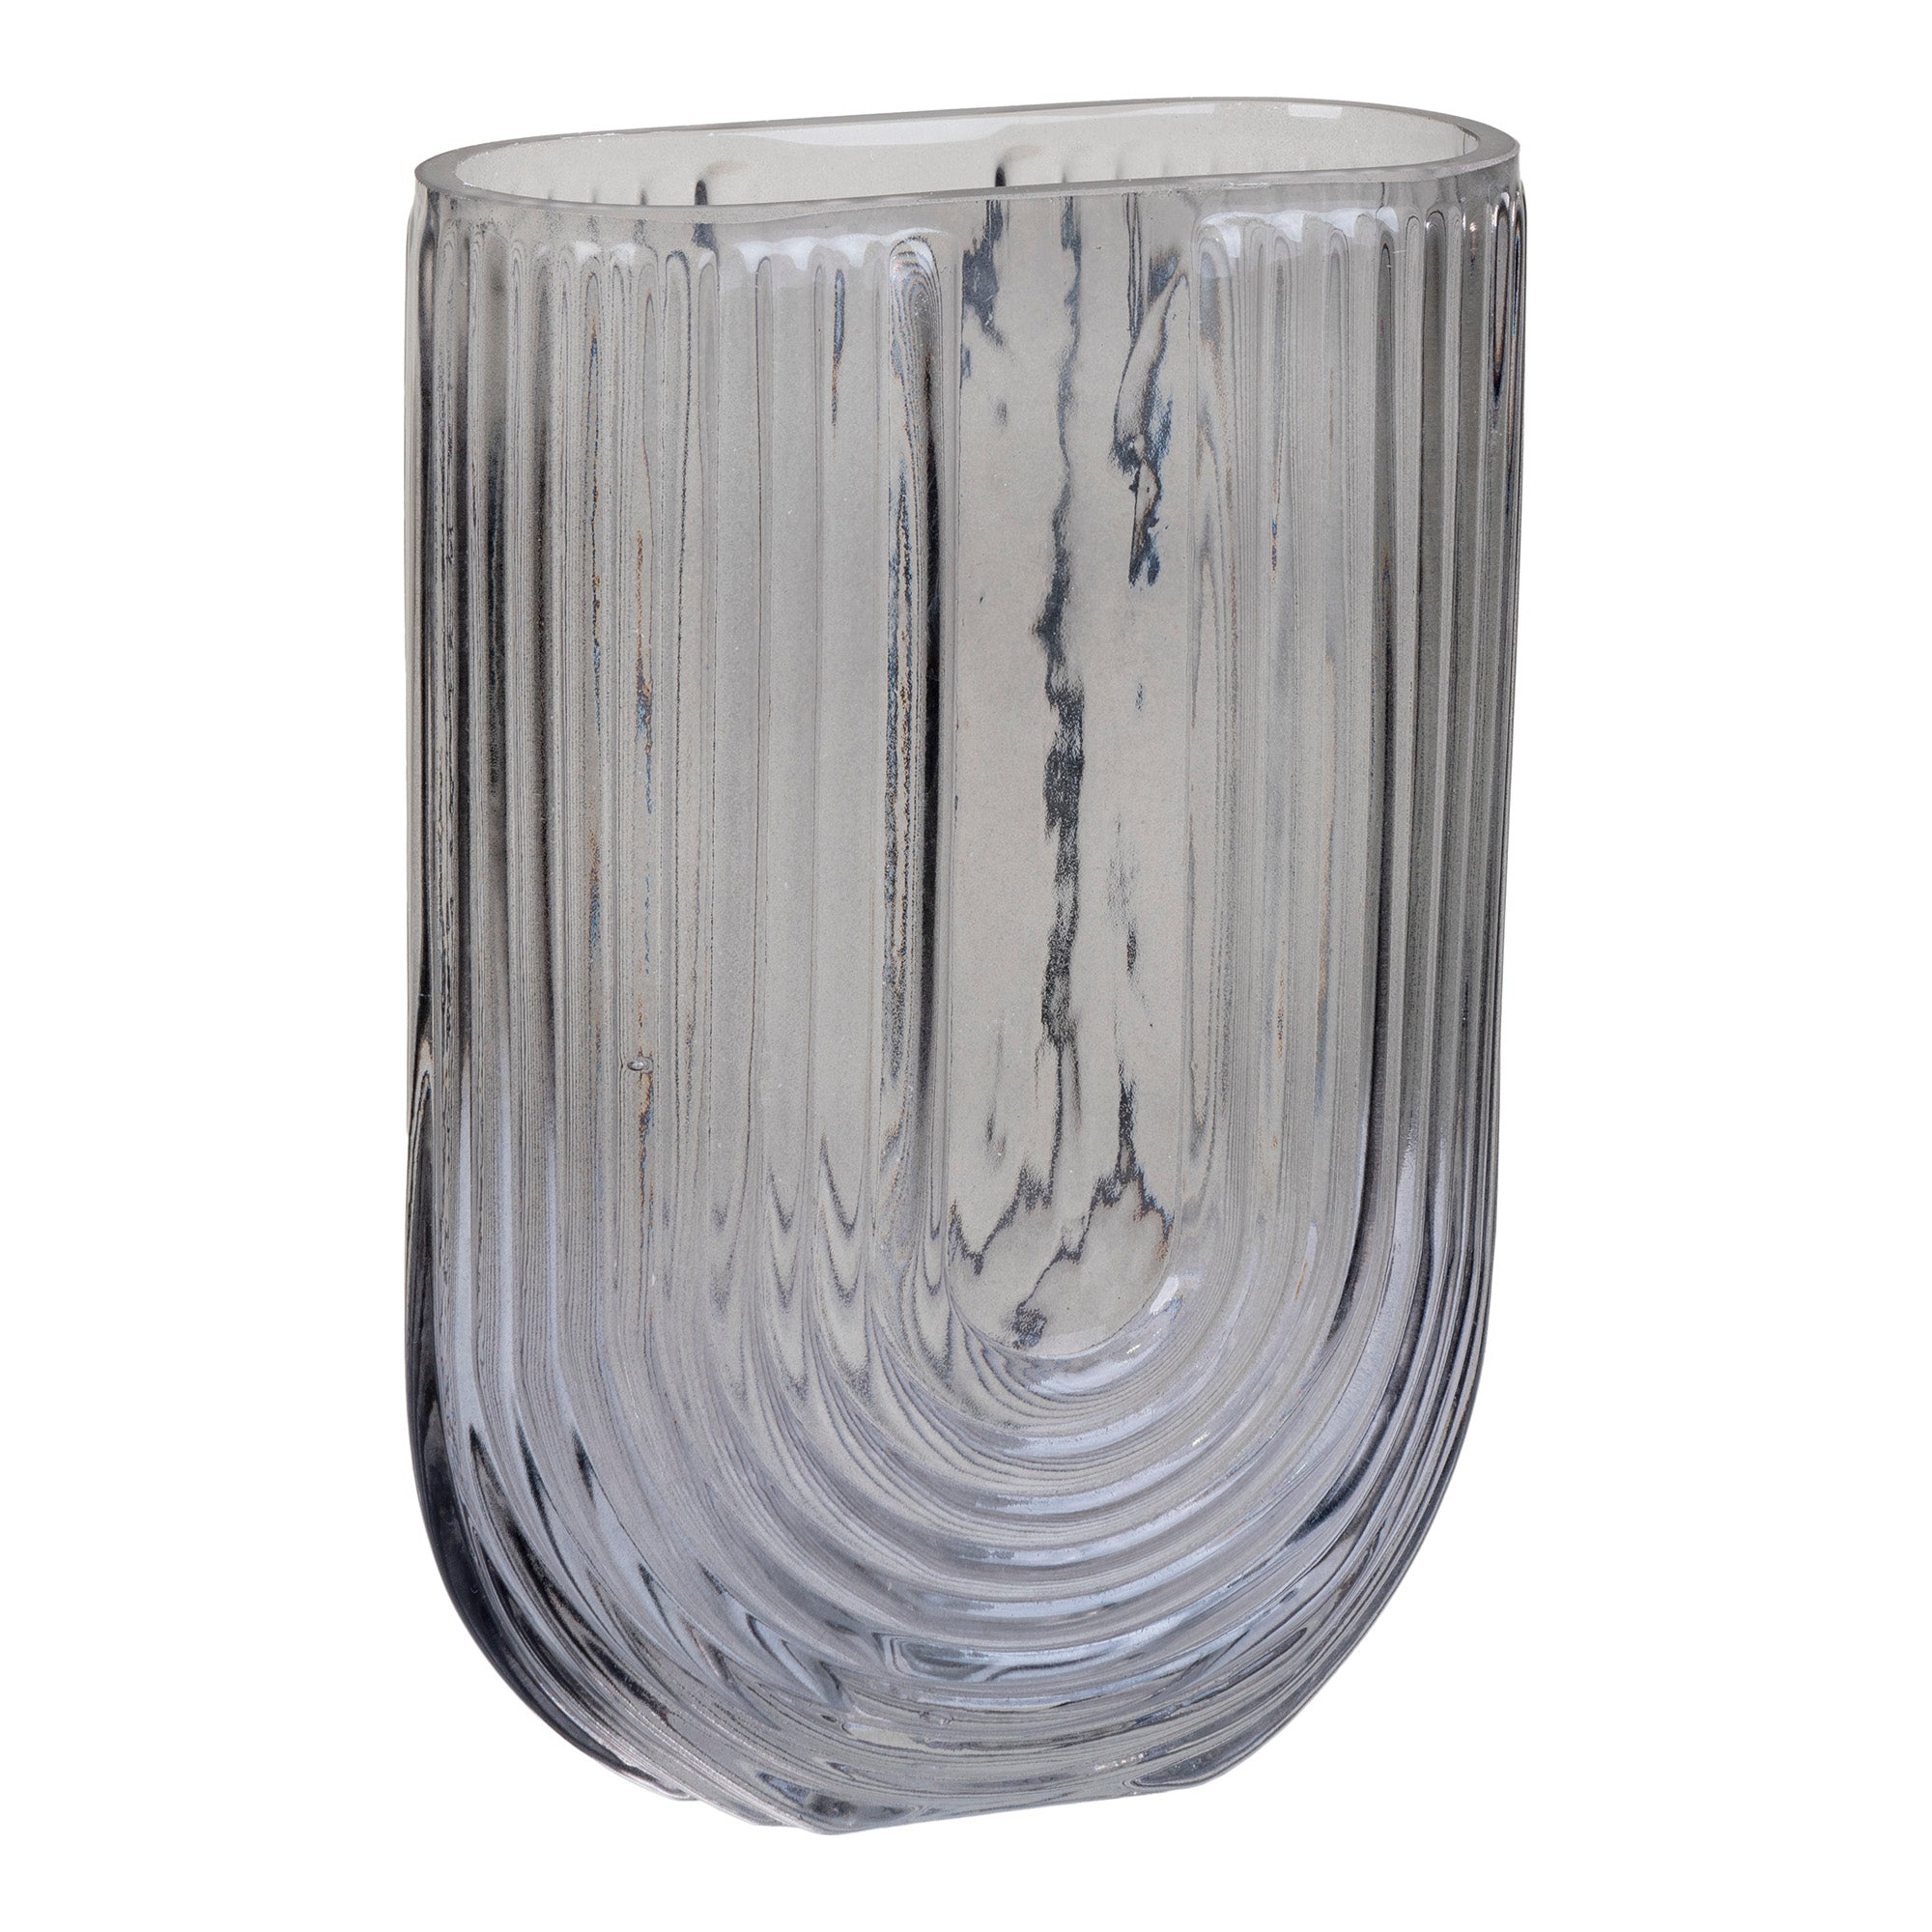 Vase - Vase I Glas, Smoked, U-Form, 13X6X19 Cm ⎮ 5713917019748 ⎮ 4441200 